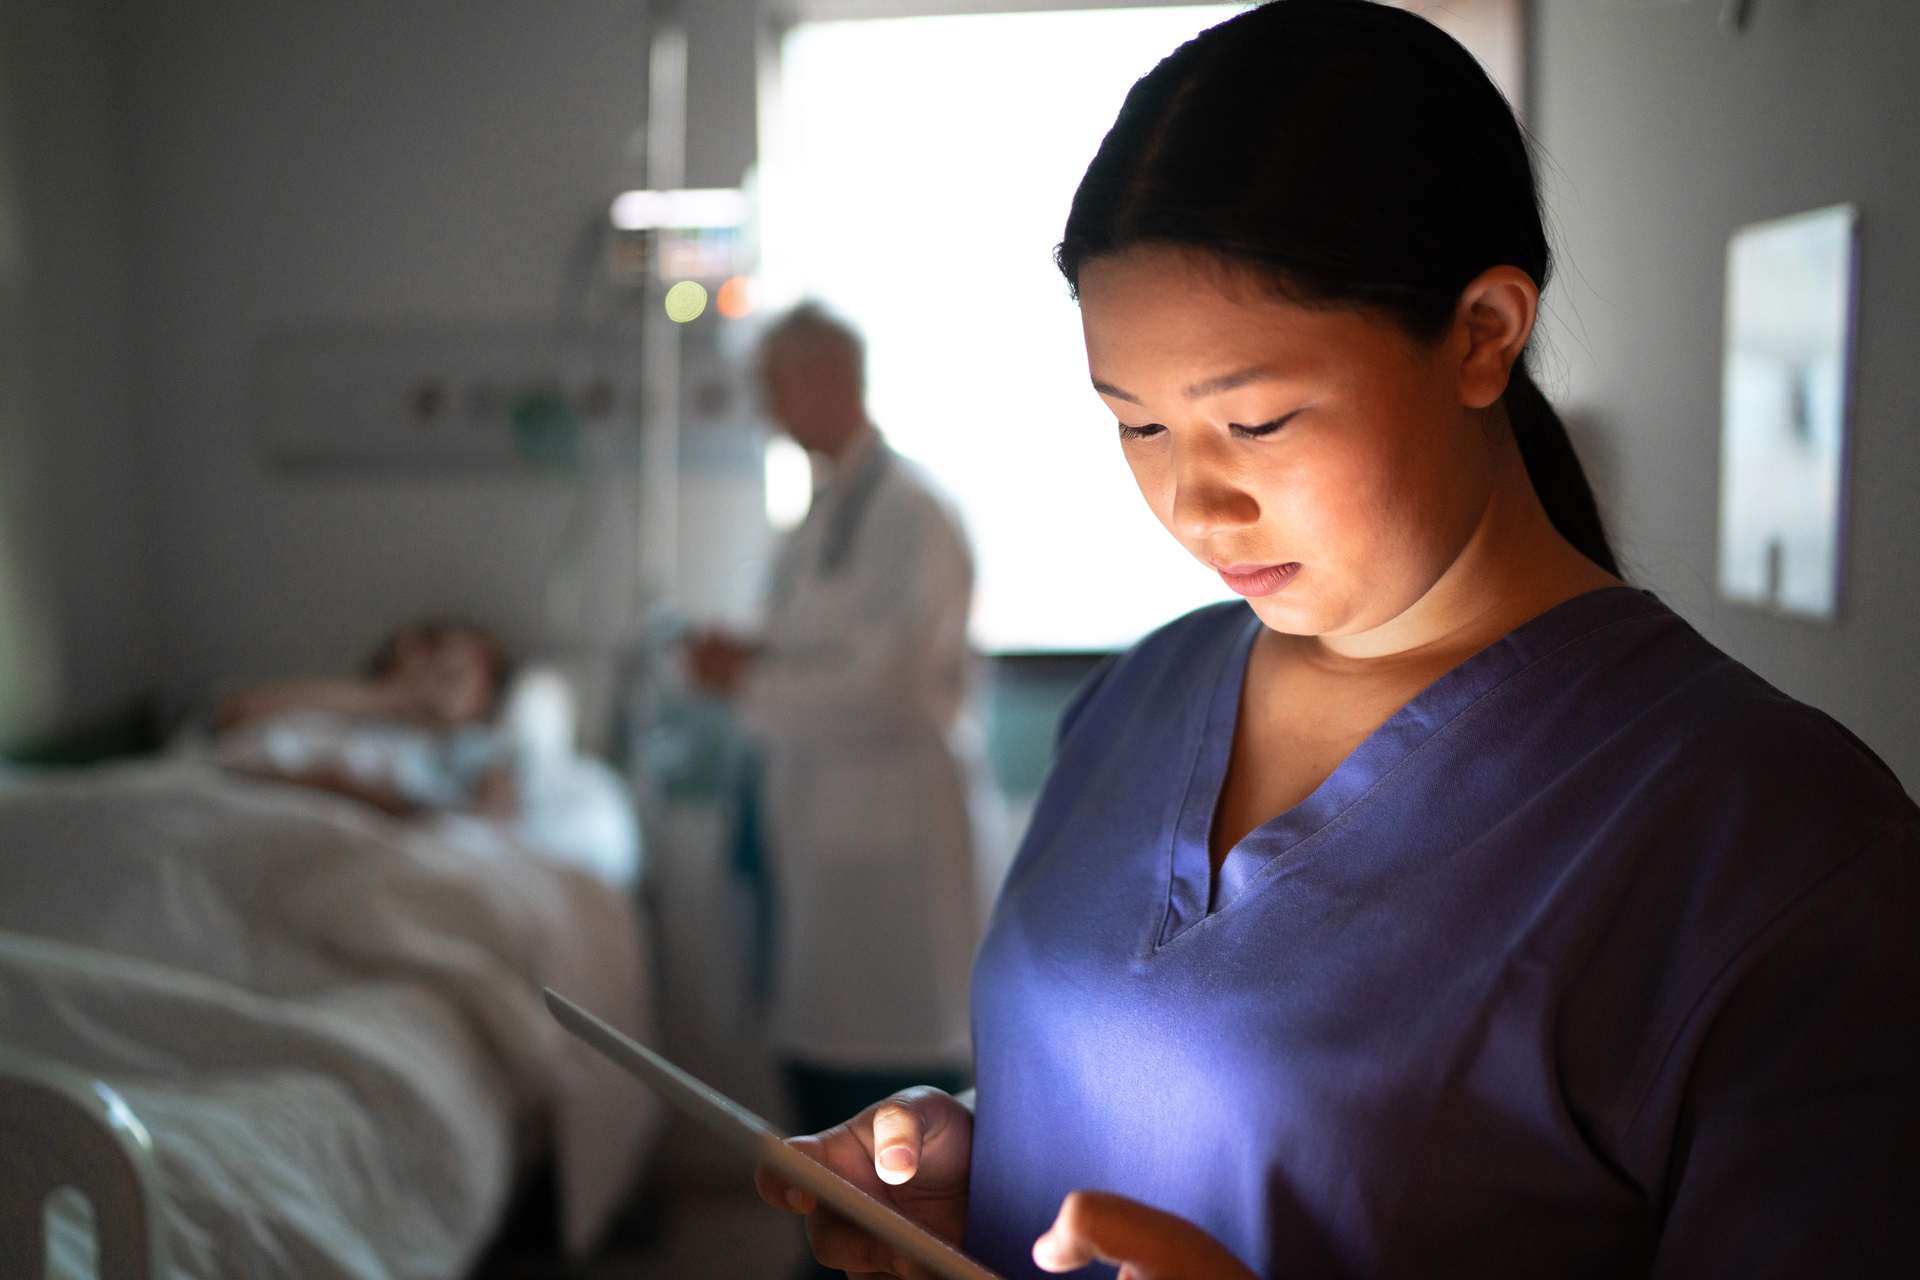 Female nurse using digital tablet at hospital room